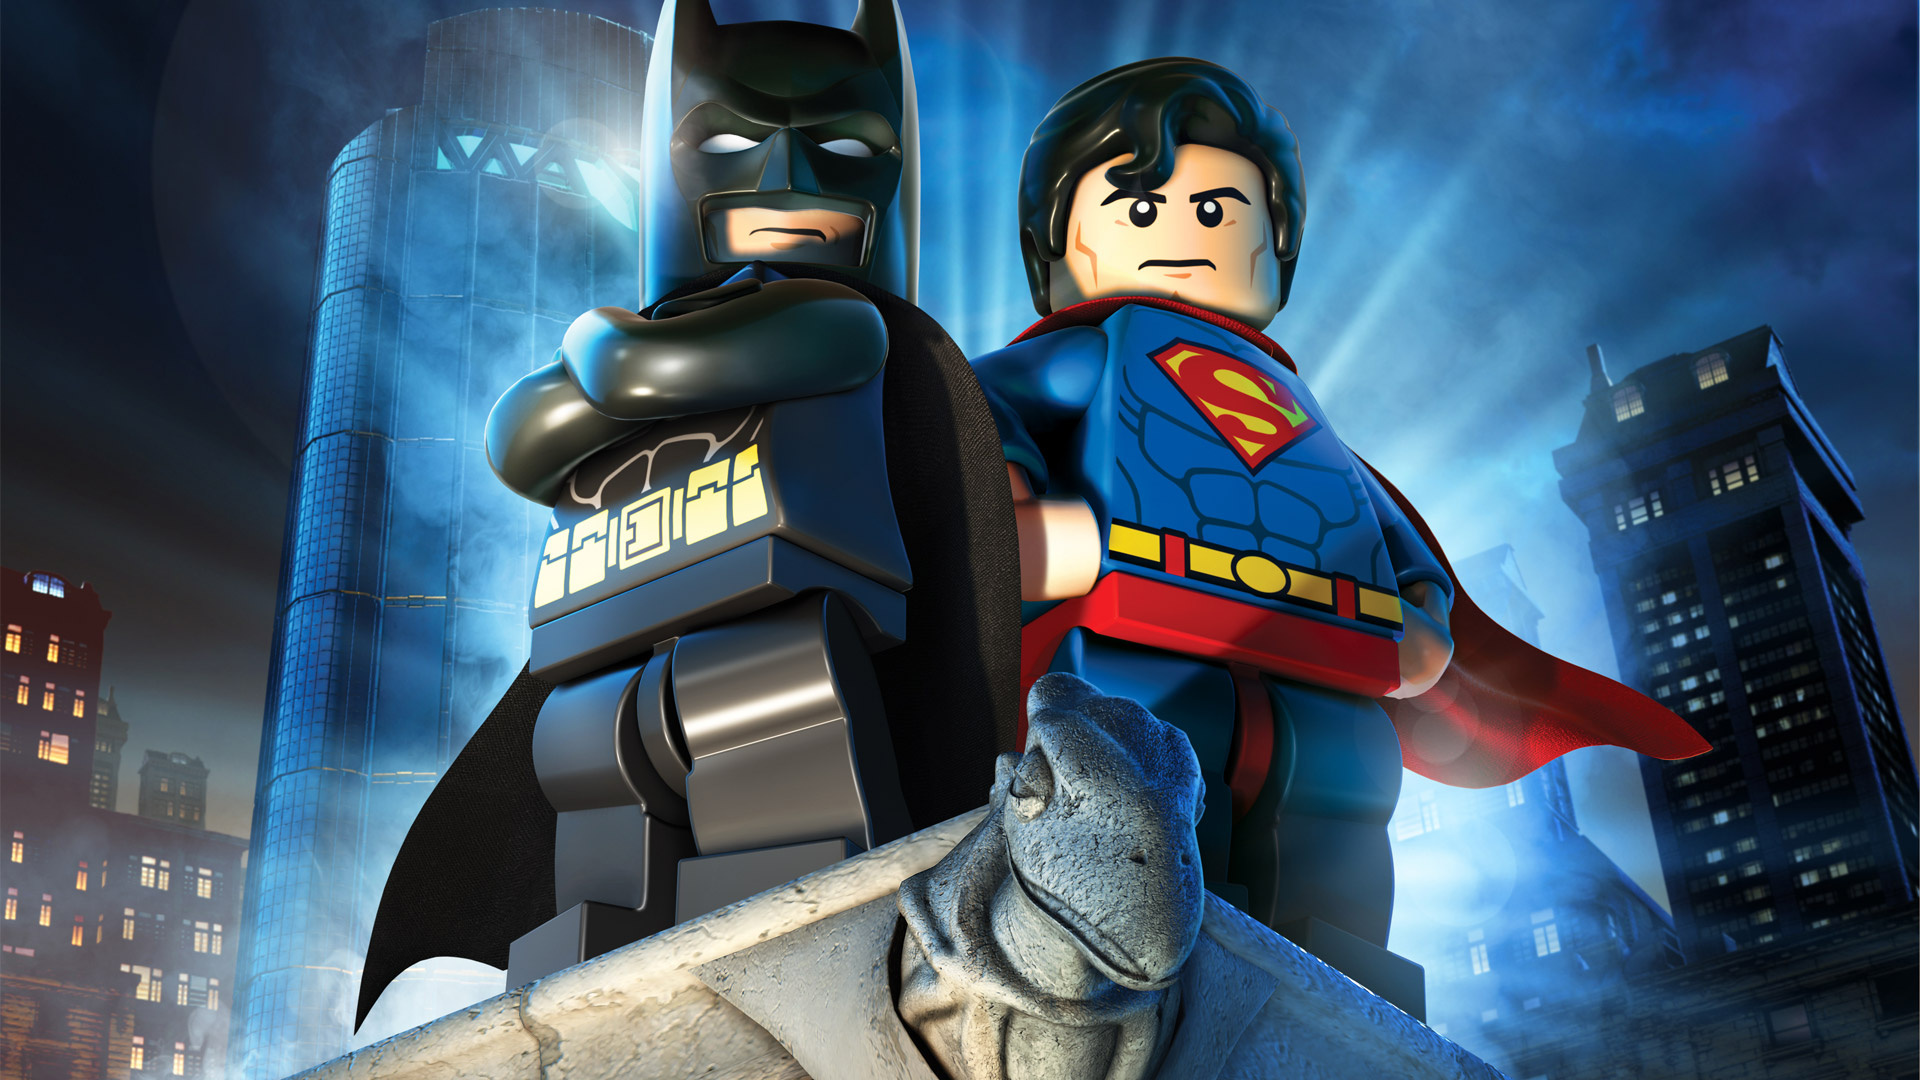 Super Heroes, Lego Batman 2, DC Super Heroes, Free wallpaper, 1920x1080 Full HD Desktop